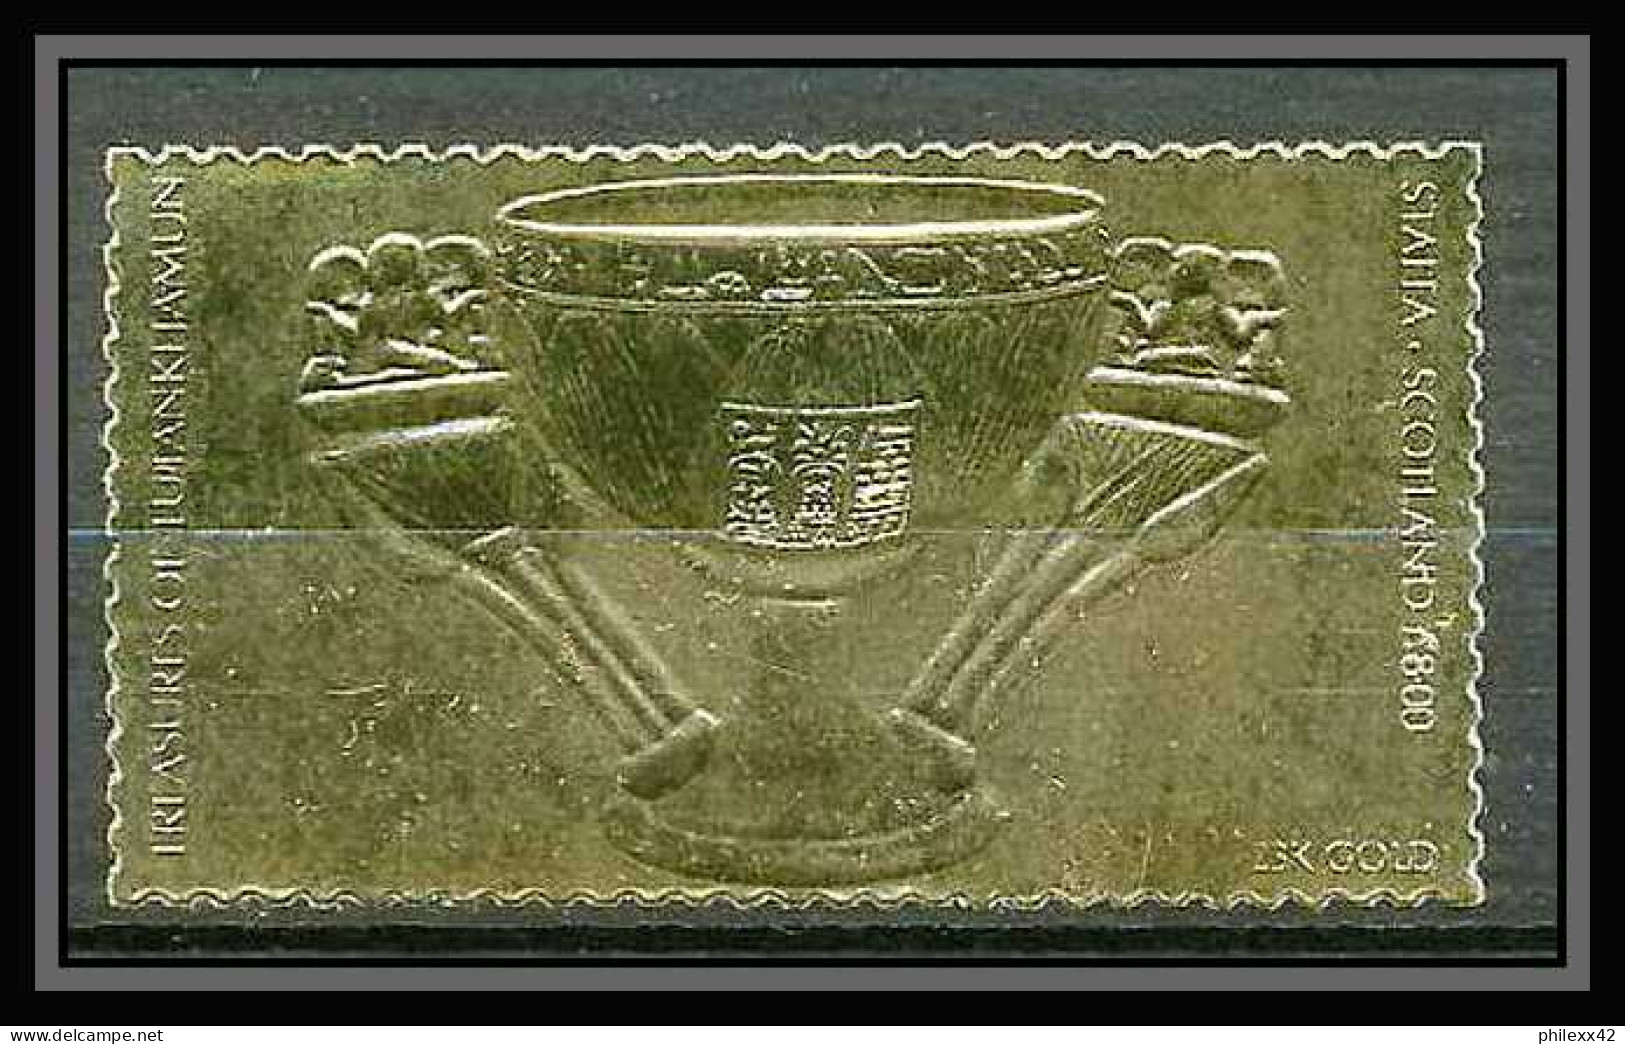 421 Staffa Scotland Egypte (Egypt UAR) Treasures Of Tutankhamun 16 OR Gold Stamps 23k Neuf** Mnh - Scotland